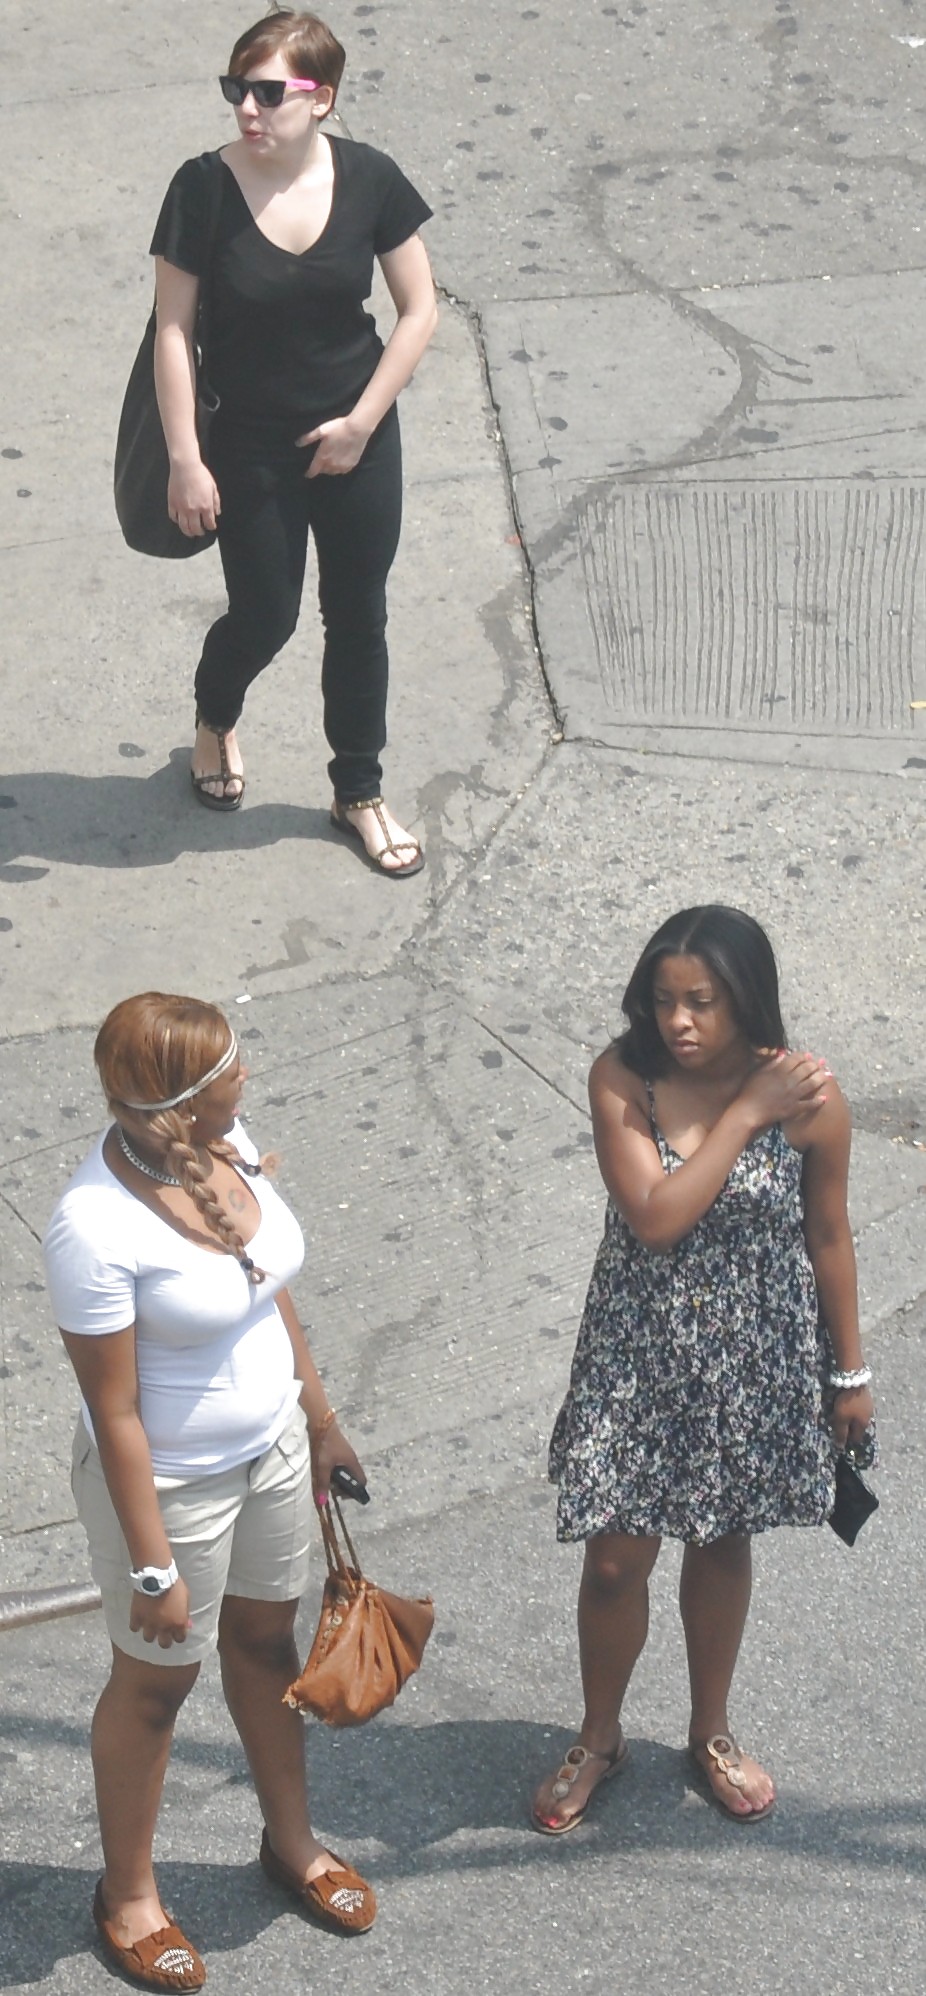 XXX Harlem Girls in the Heat 33